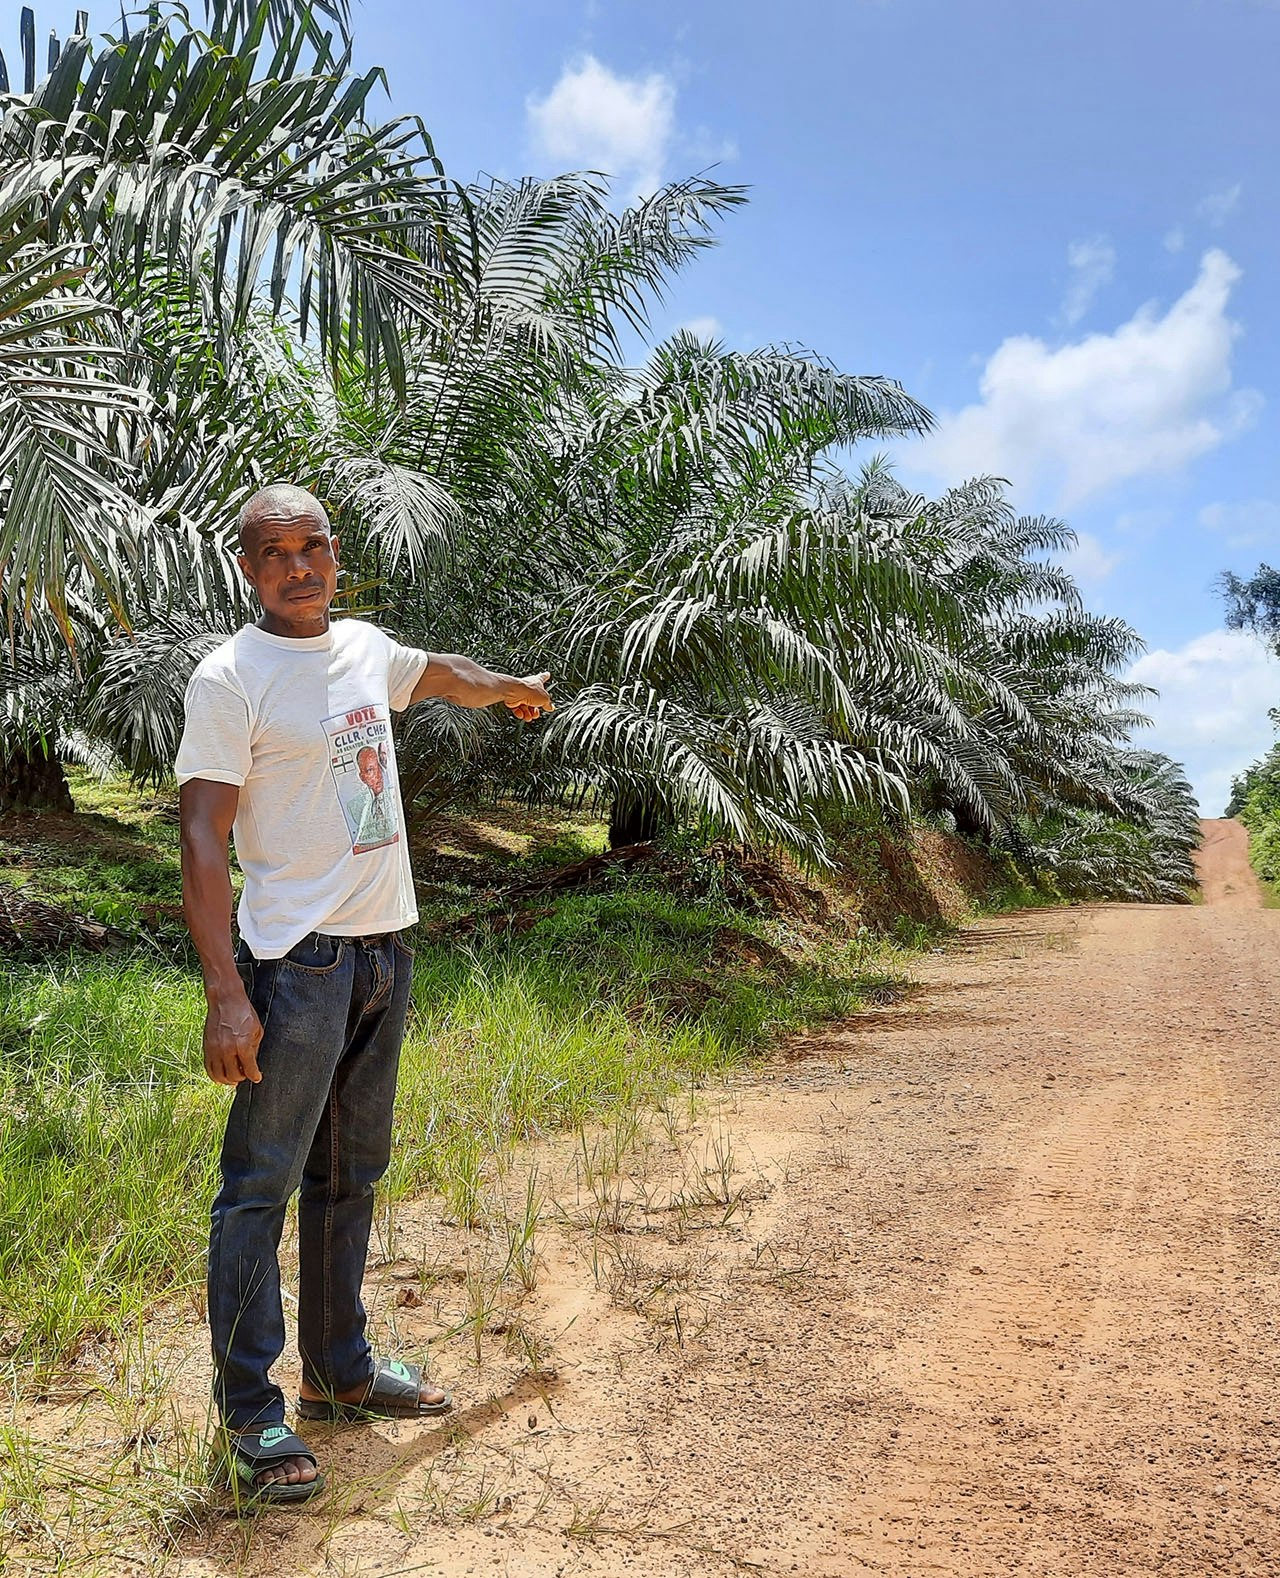 Occasious Sarckor wijst naar de grenzen van wat ooit zijn land was. Volgens de Liberiaanse boer is zijn land afgepakt door palmoliebedrijf Golden Veroleum, wat er een palmolieplantage voor in de plaats heeft gezet.